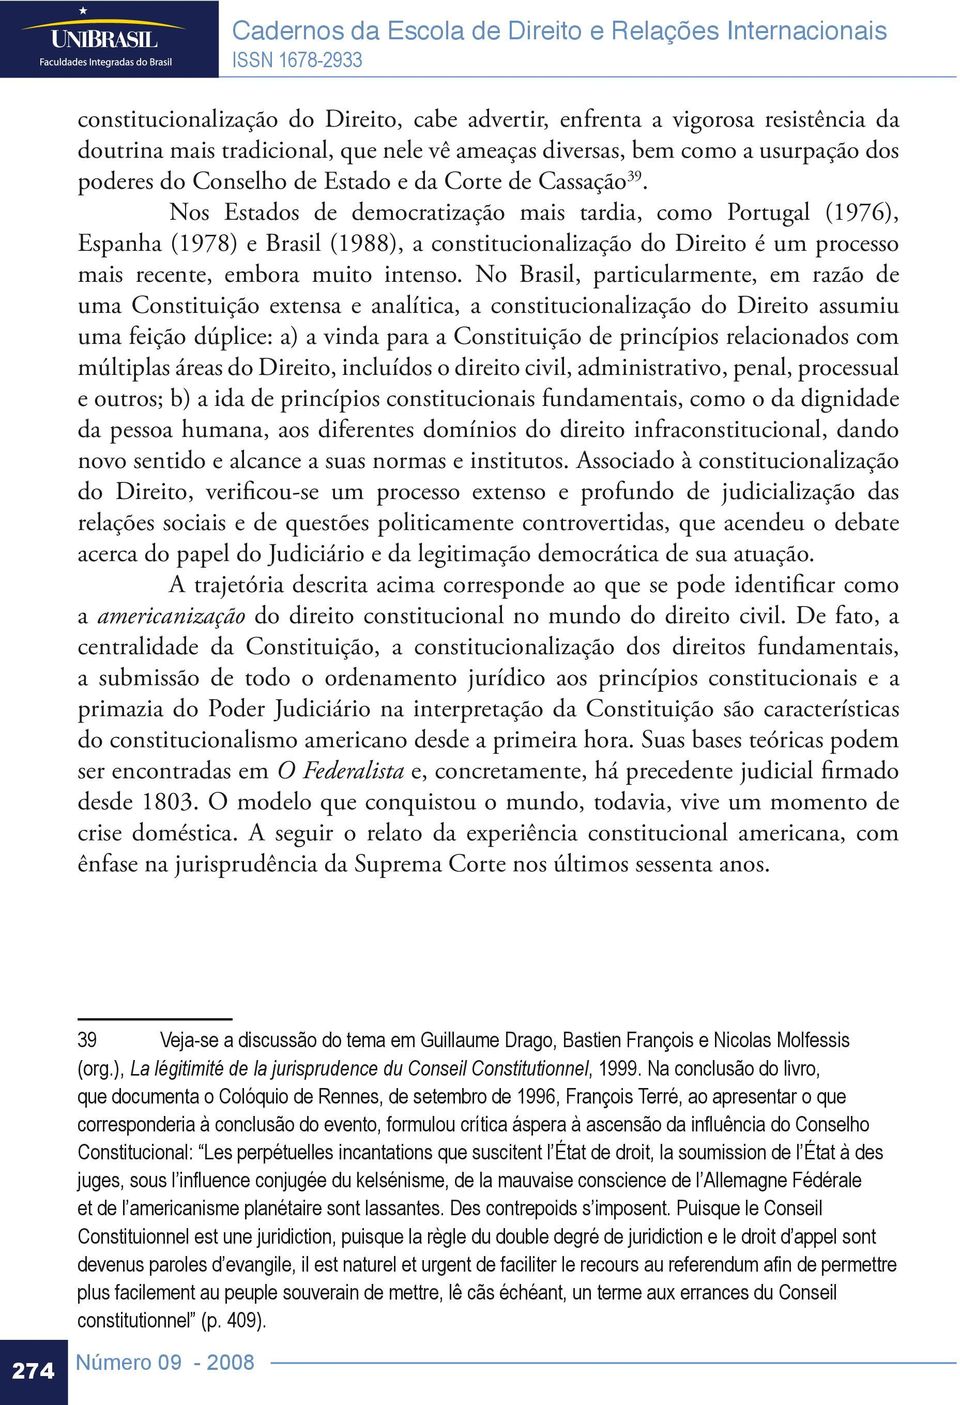 Nos Estados de democratização mais tardia, como Portugal (1976), Espanha (1978) e Brasil (1988), a constitucionalização do Direito é um processo mais recente, embora muito intenso.